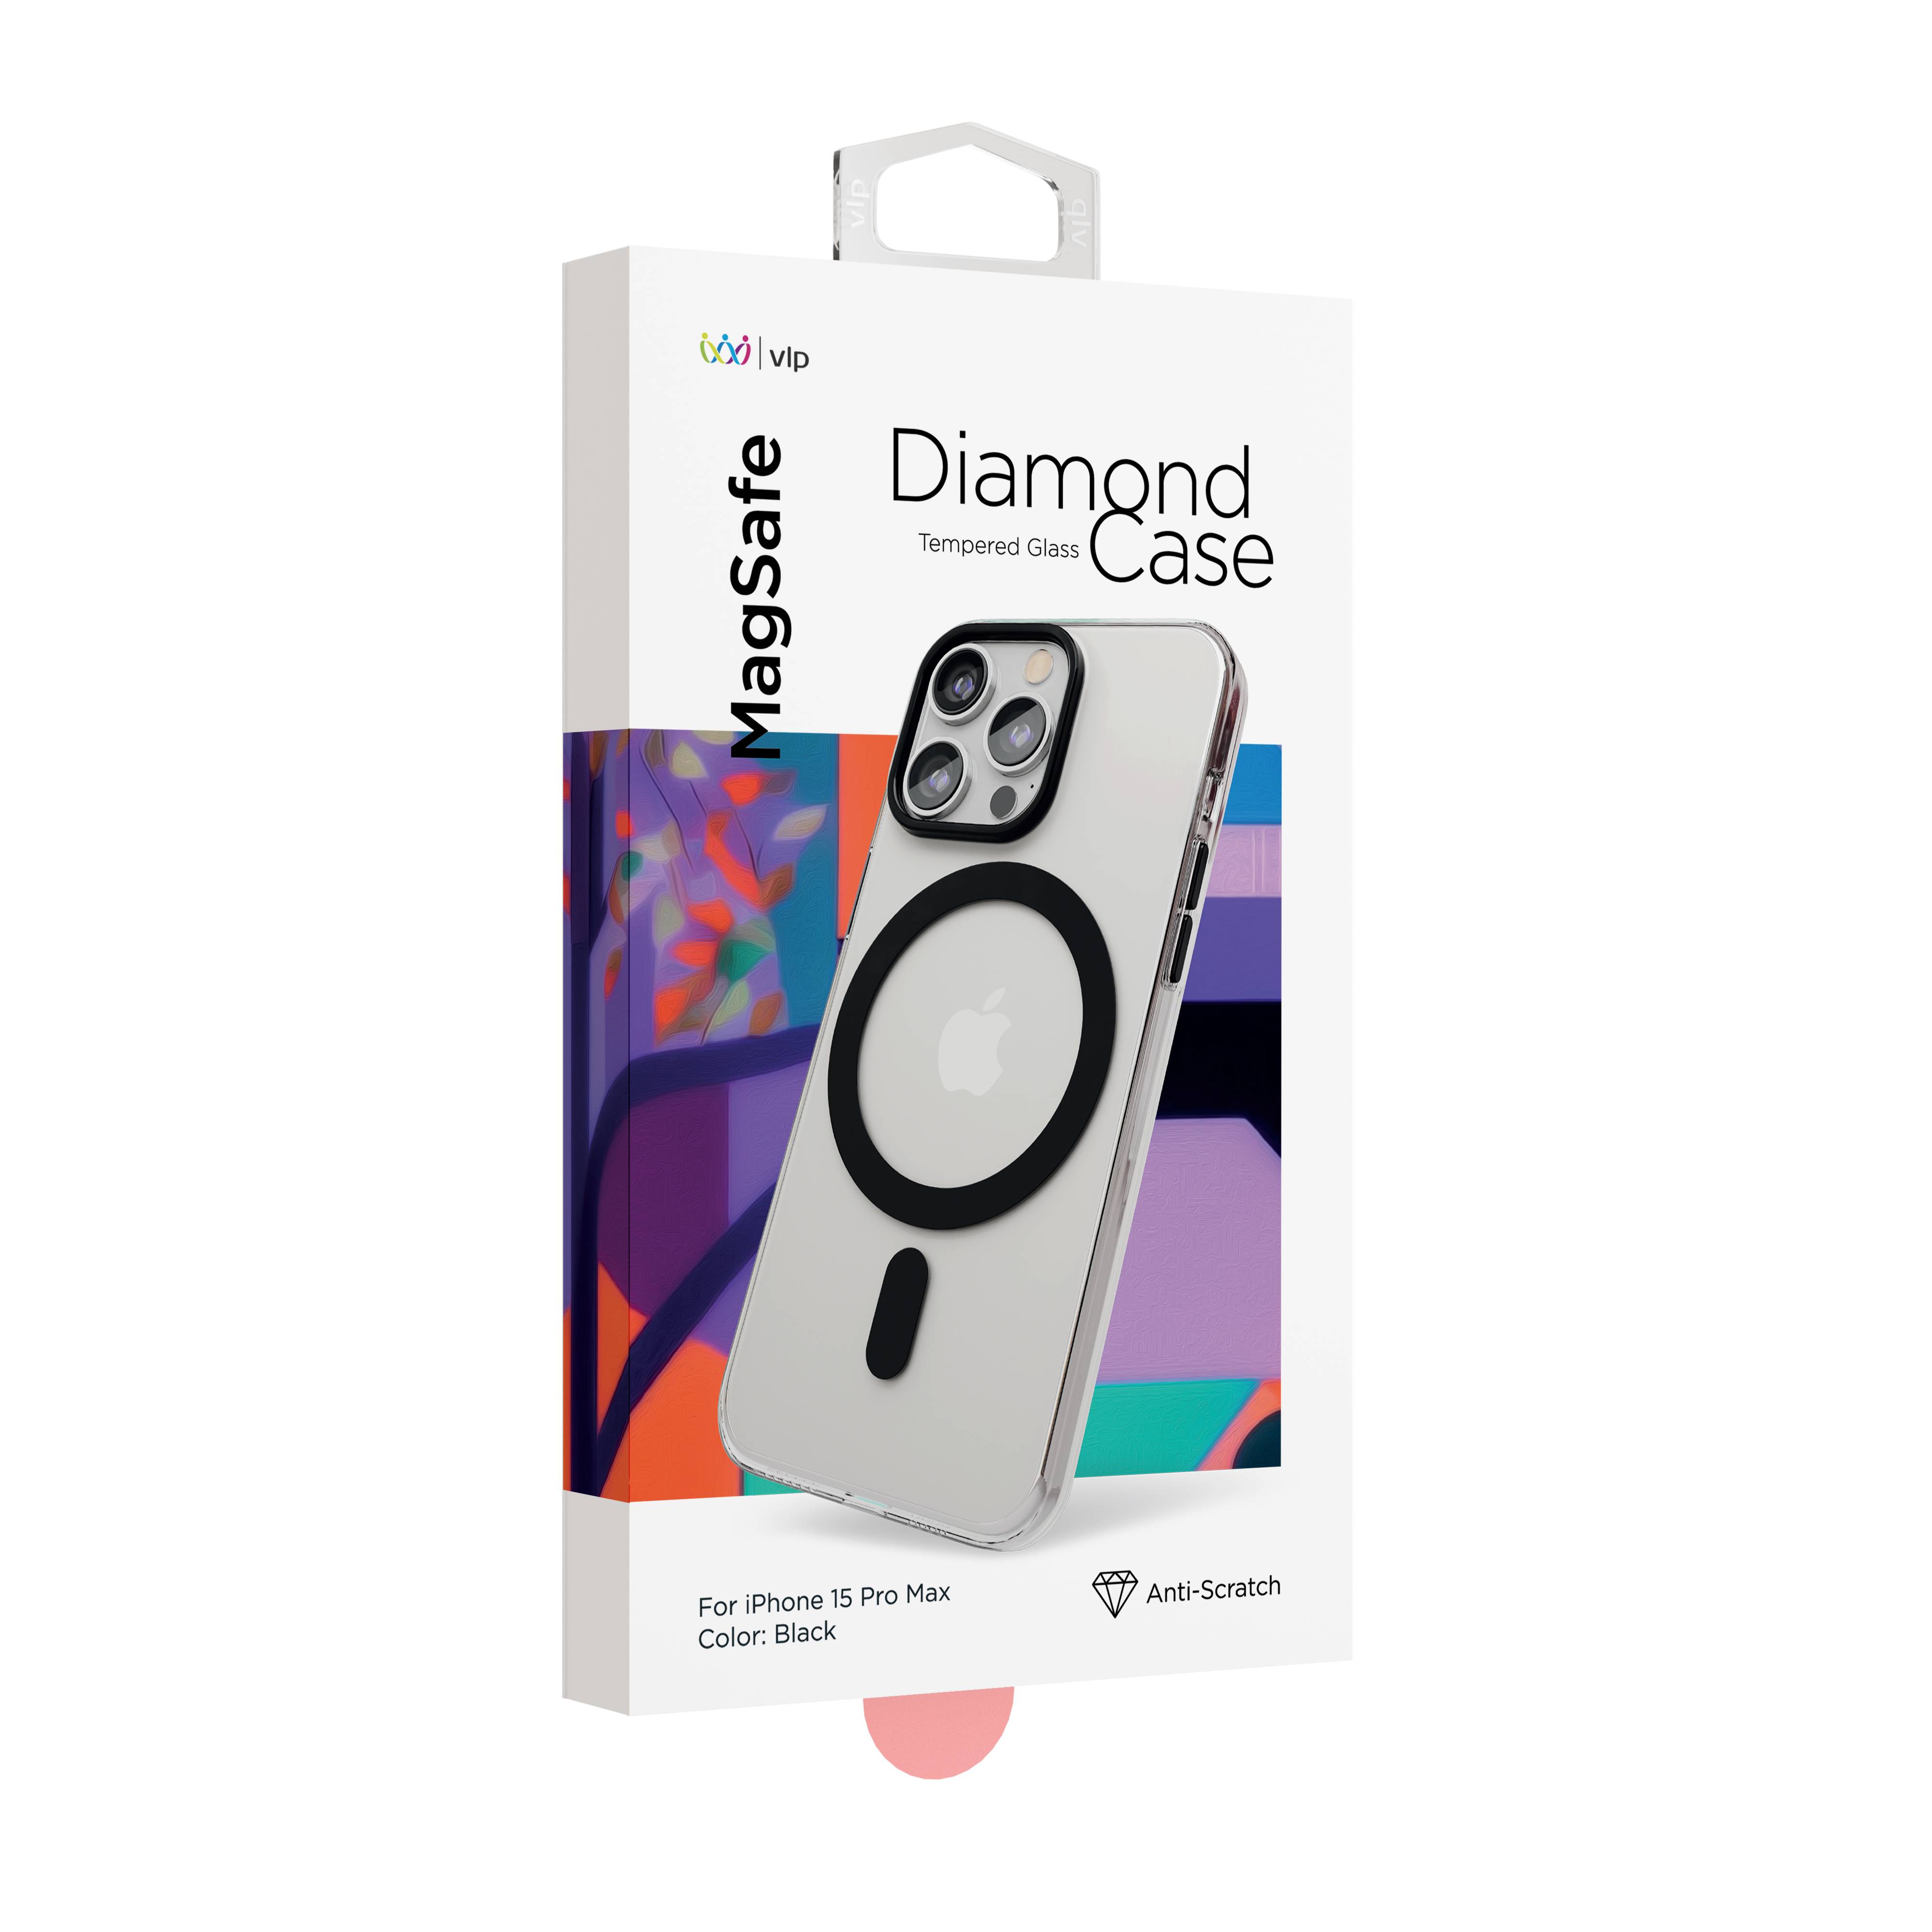 Фото — Чехол для смартфона "vlp" Diamond Case с MagSafe для iPhone 15 ProMax, черный